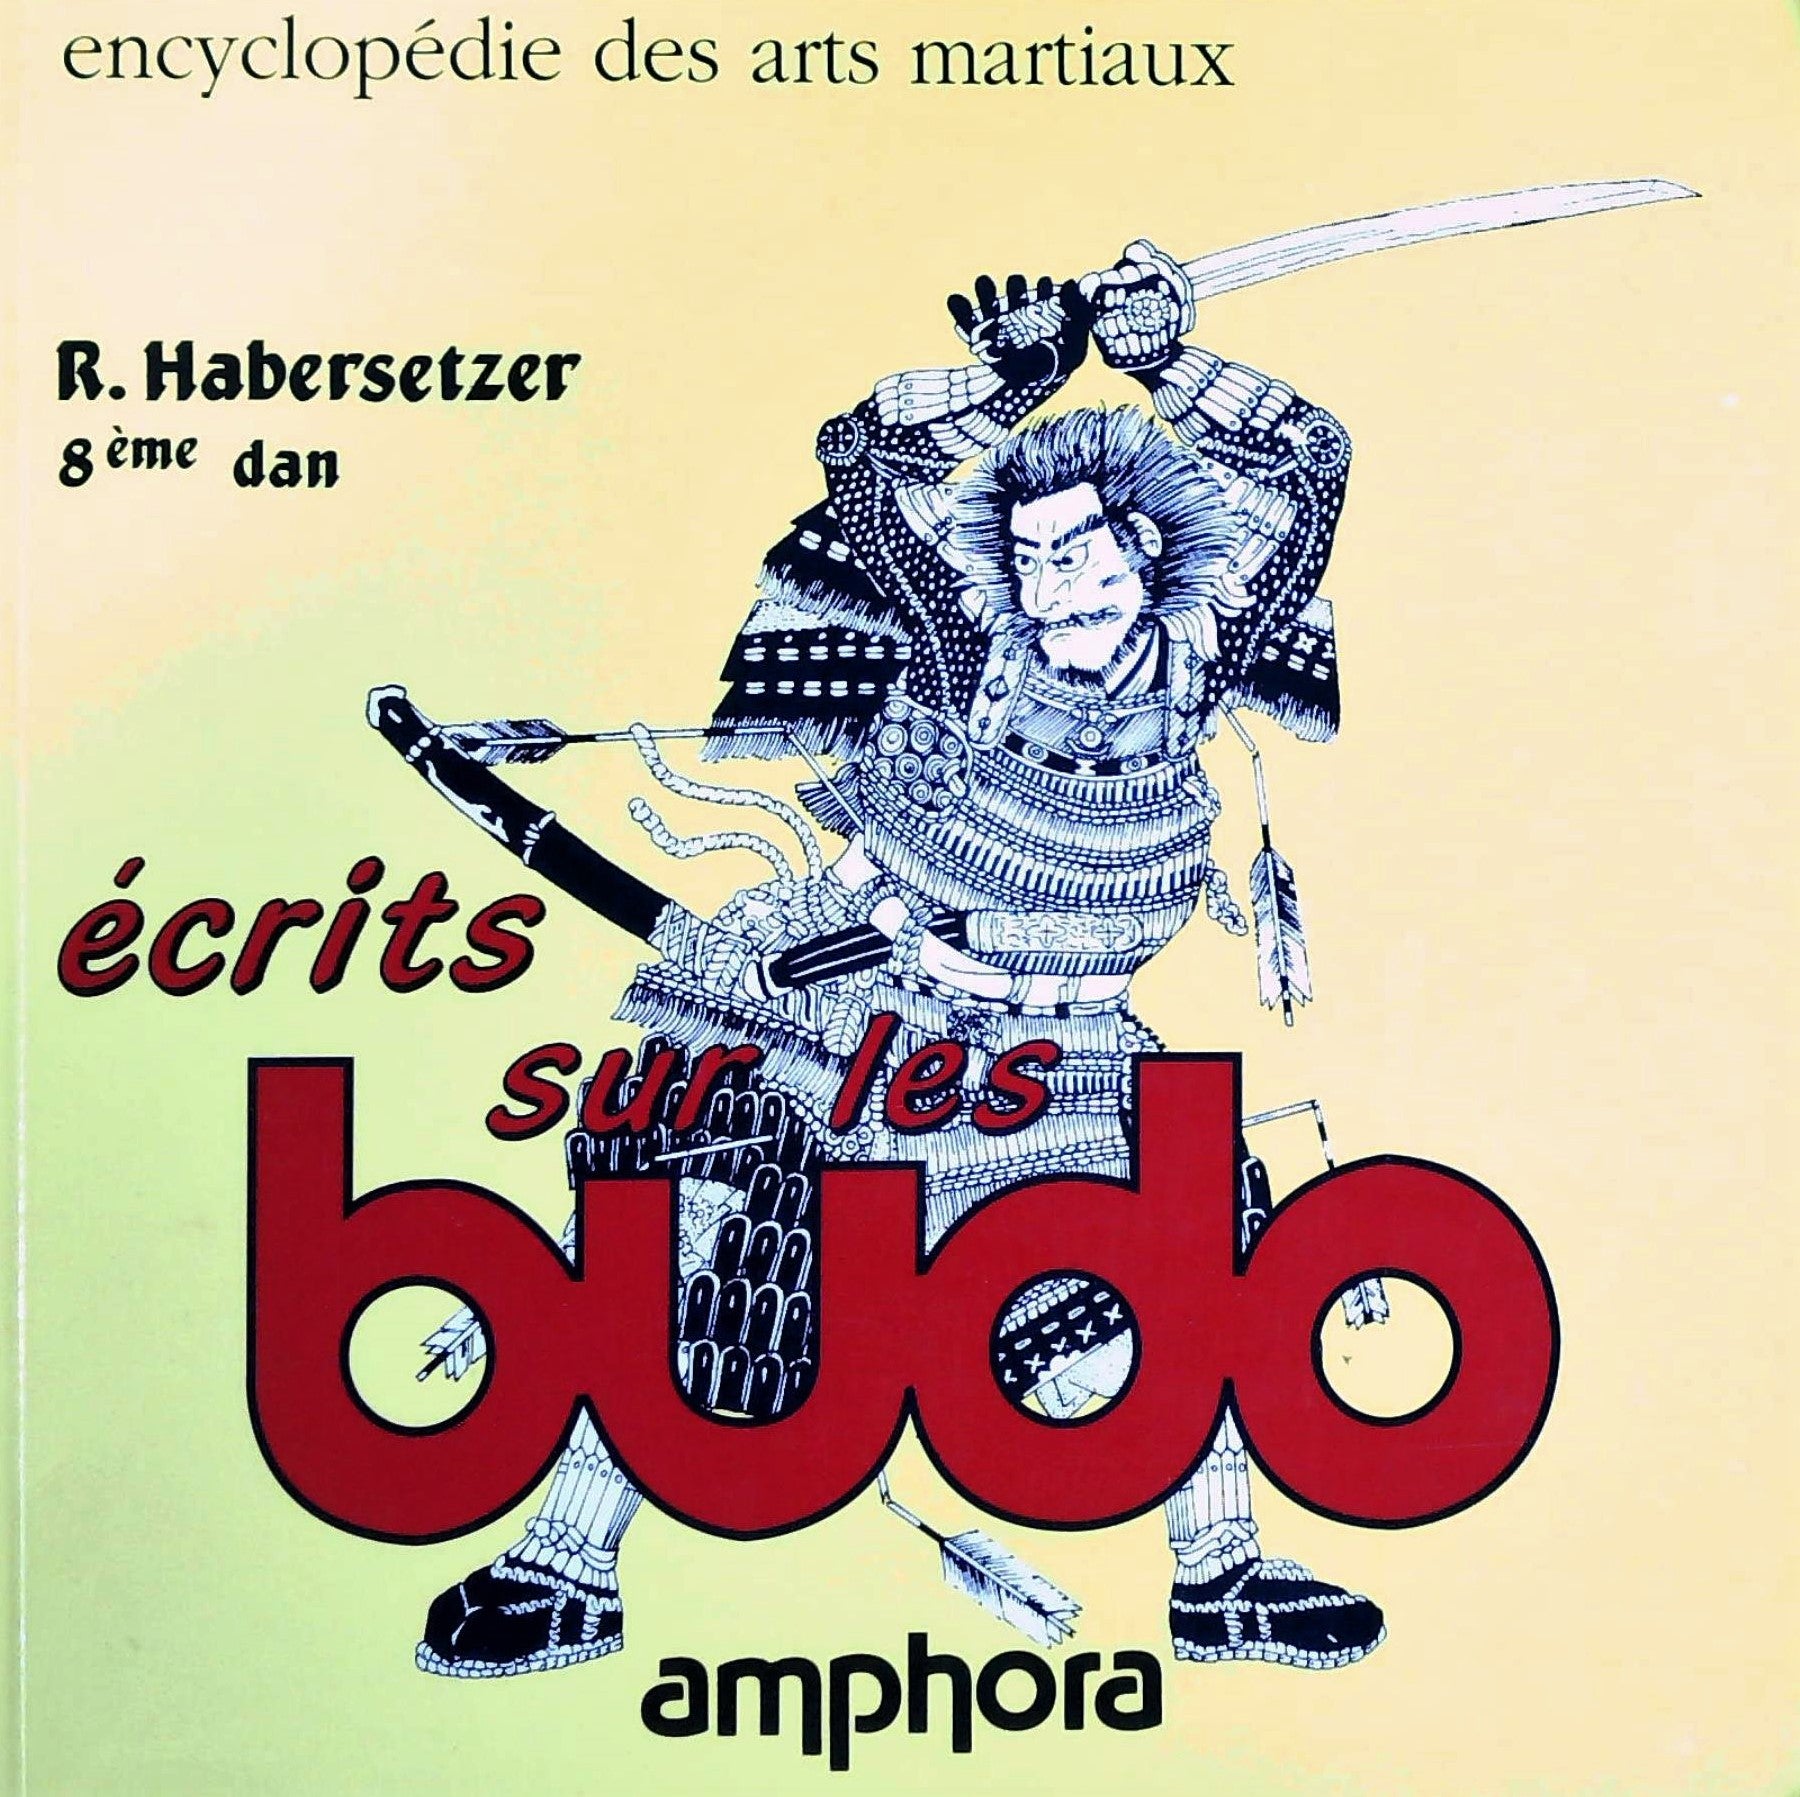 Livre ISBN 2851802488 Encyclopédie des arts martiaux : Écrits sur les bubo (R. Habersetzer)